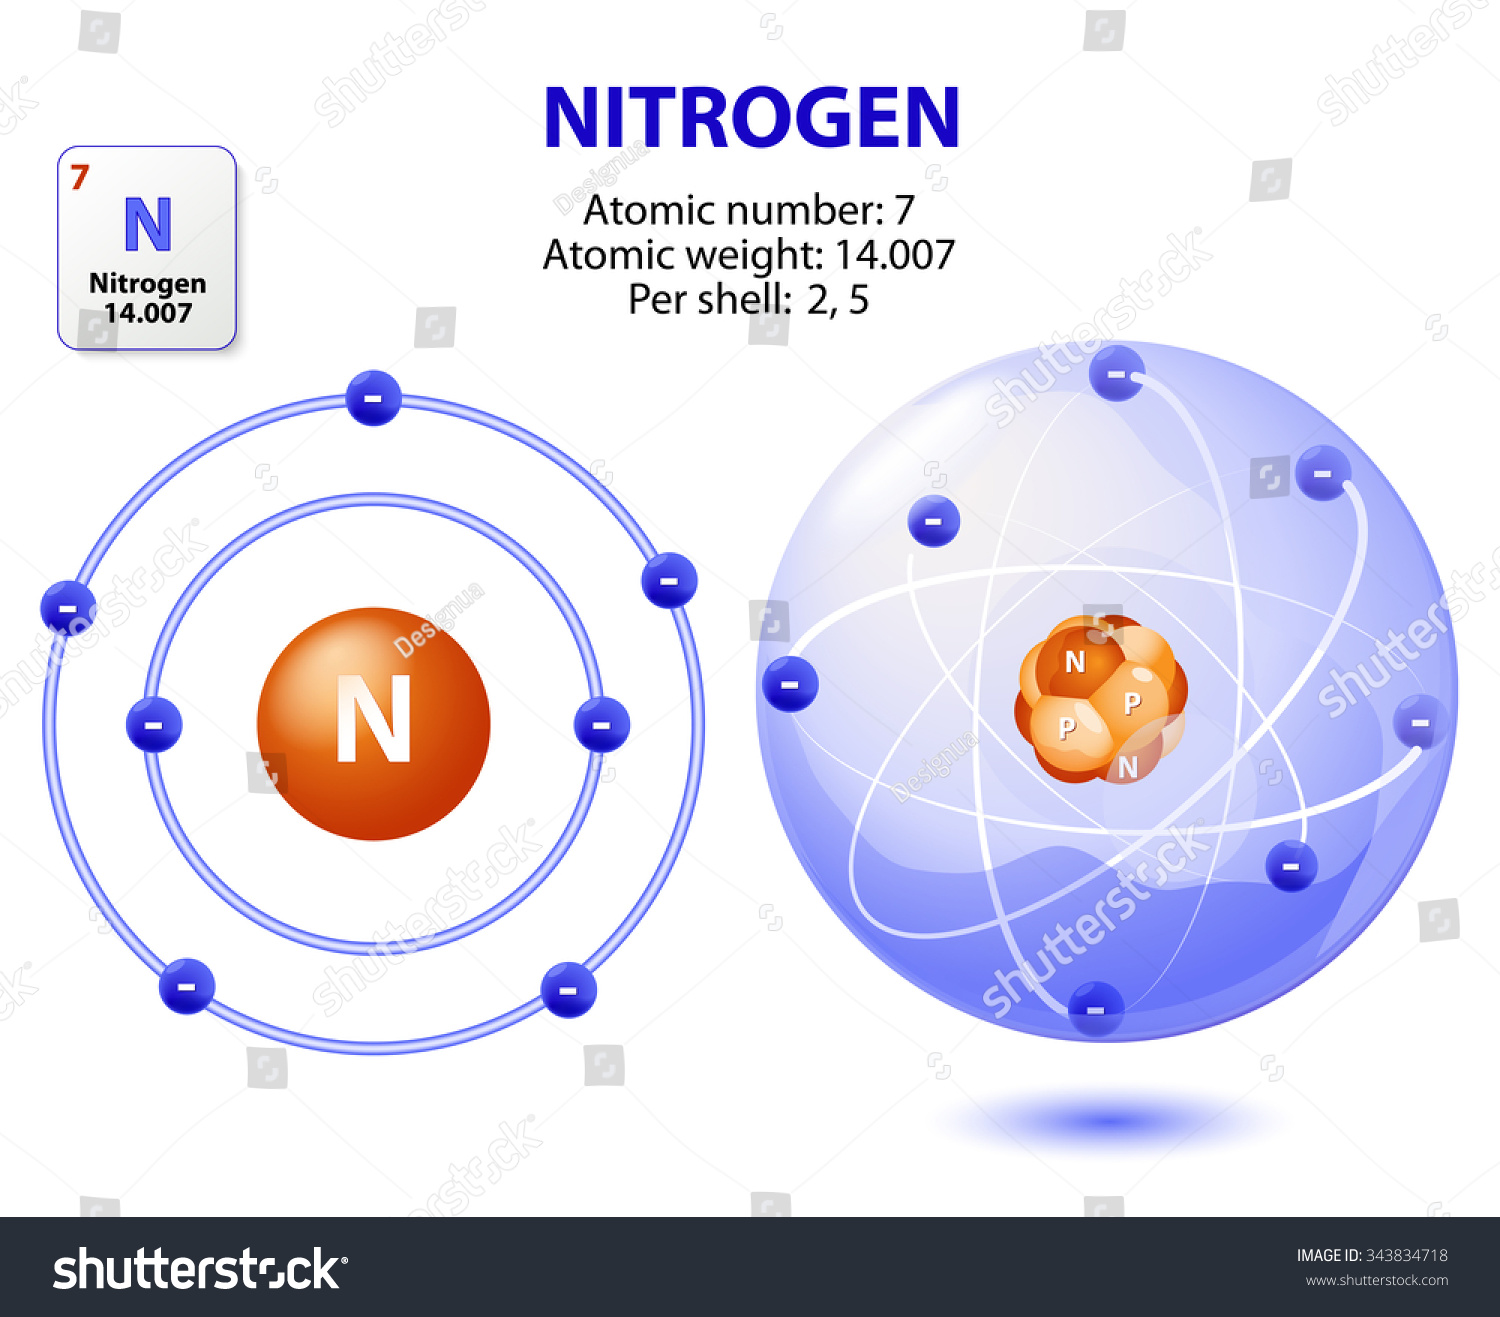 Atom Nitrogen Stockillustration 20   Shutterstock